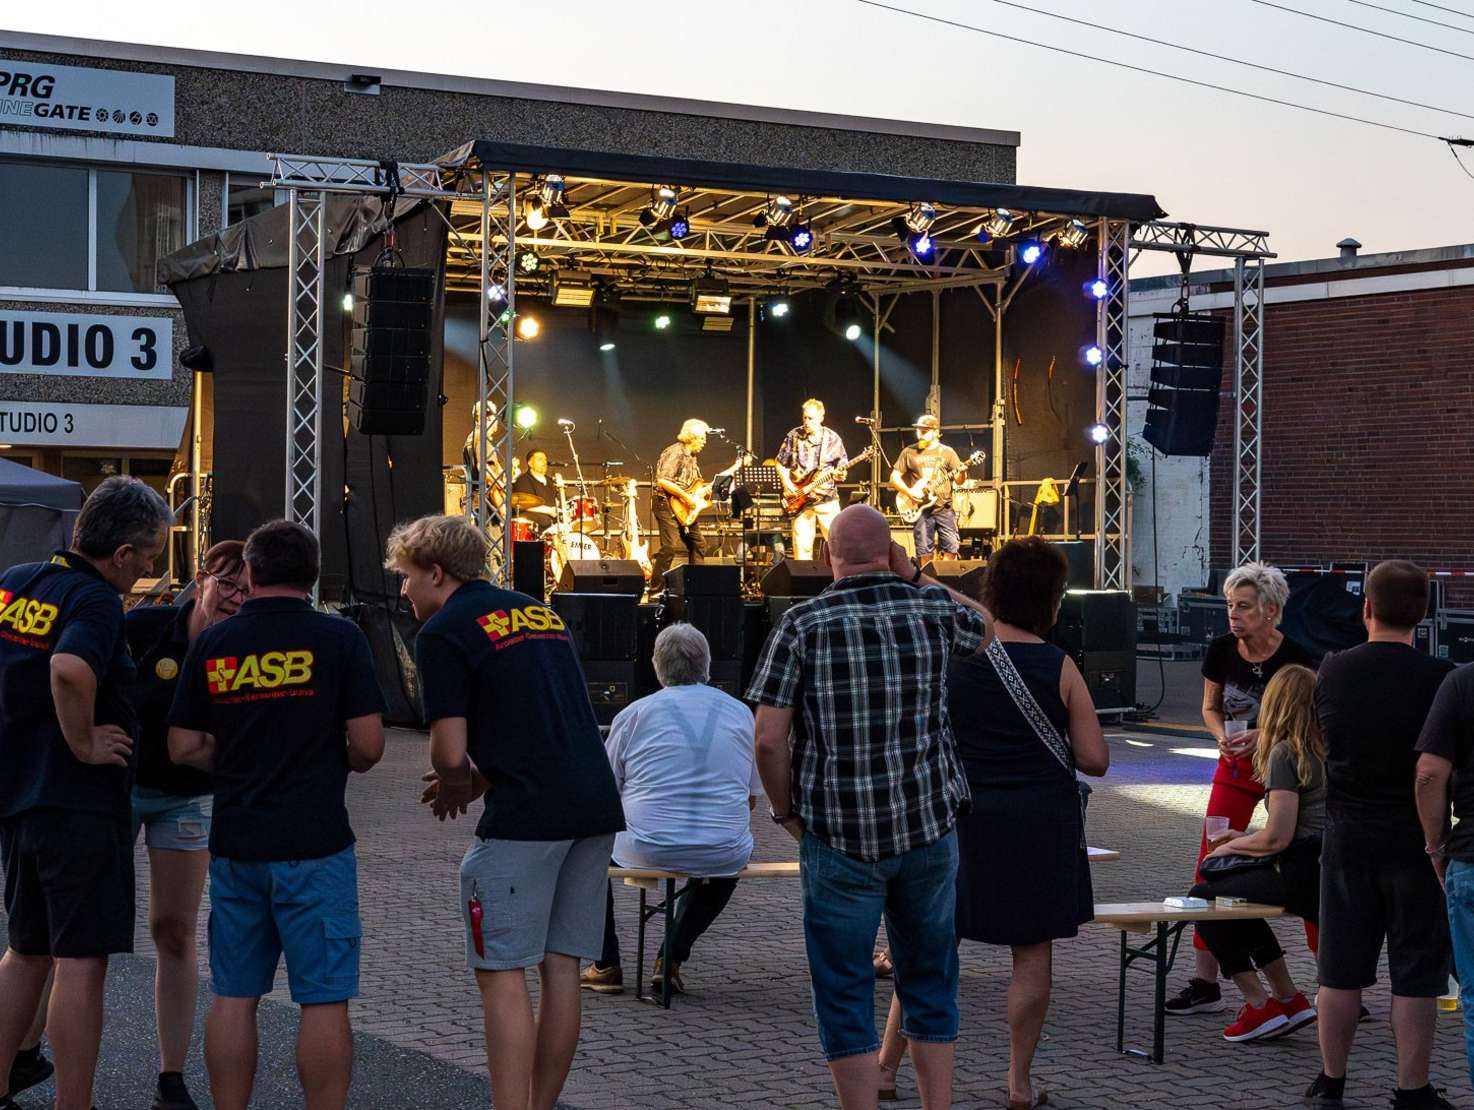 Auftritt der Band Roaring Silence beim Stadtteilfest des ASB Ortsverband Hamburg-Nordost e.V.  Foto: Arne Schütte.